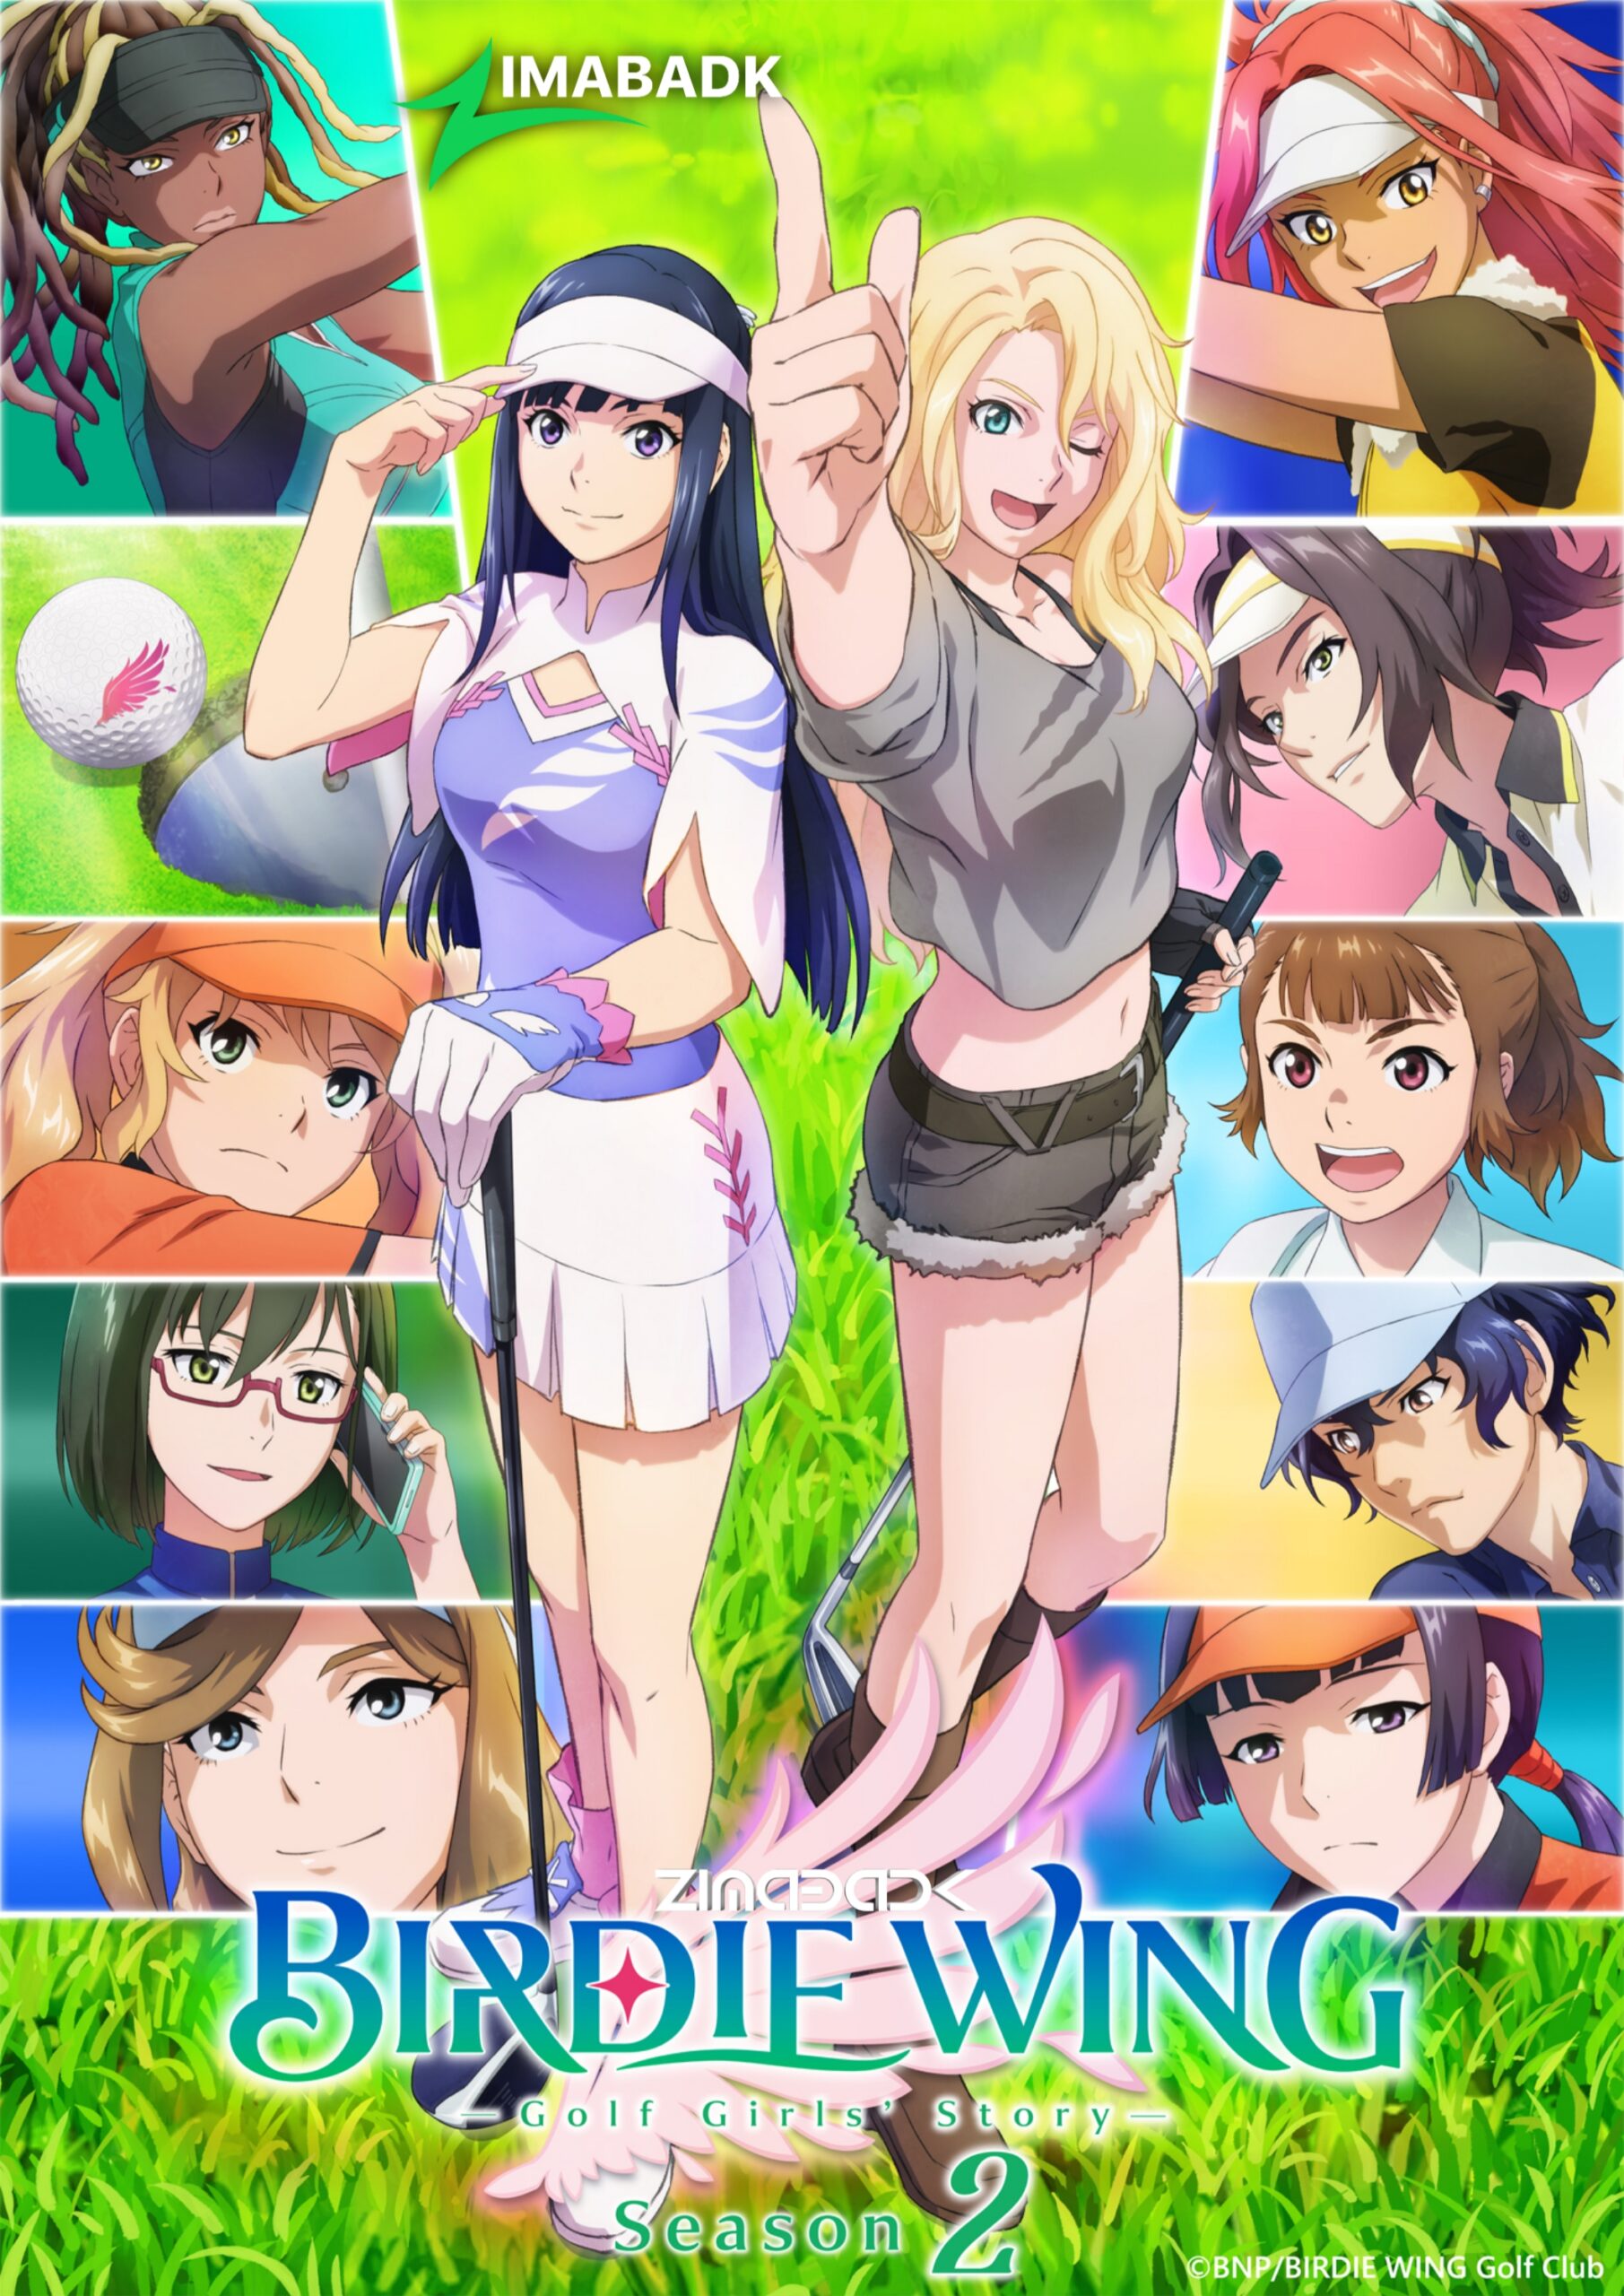 انمي Birdie Wing: Golf Girls  Story Season 2 الحلقة 1